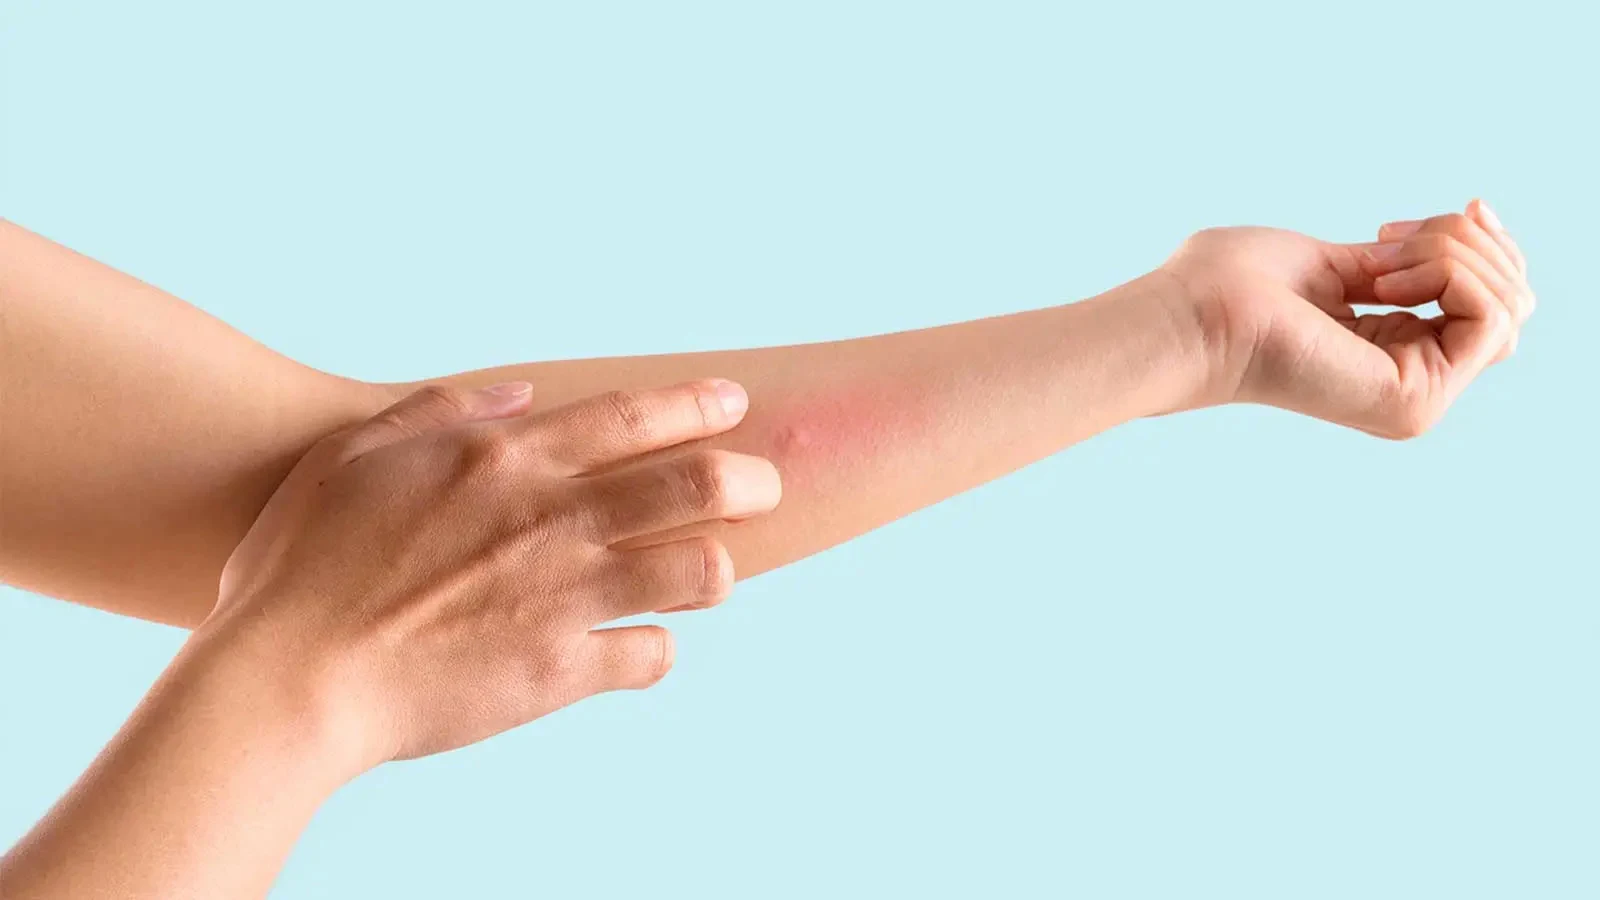 En hand med irriterad hud